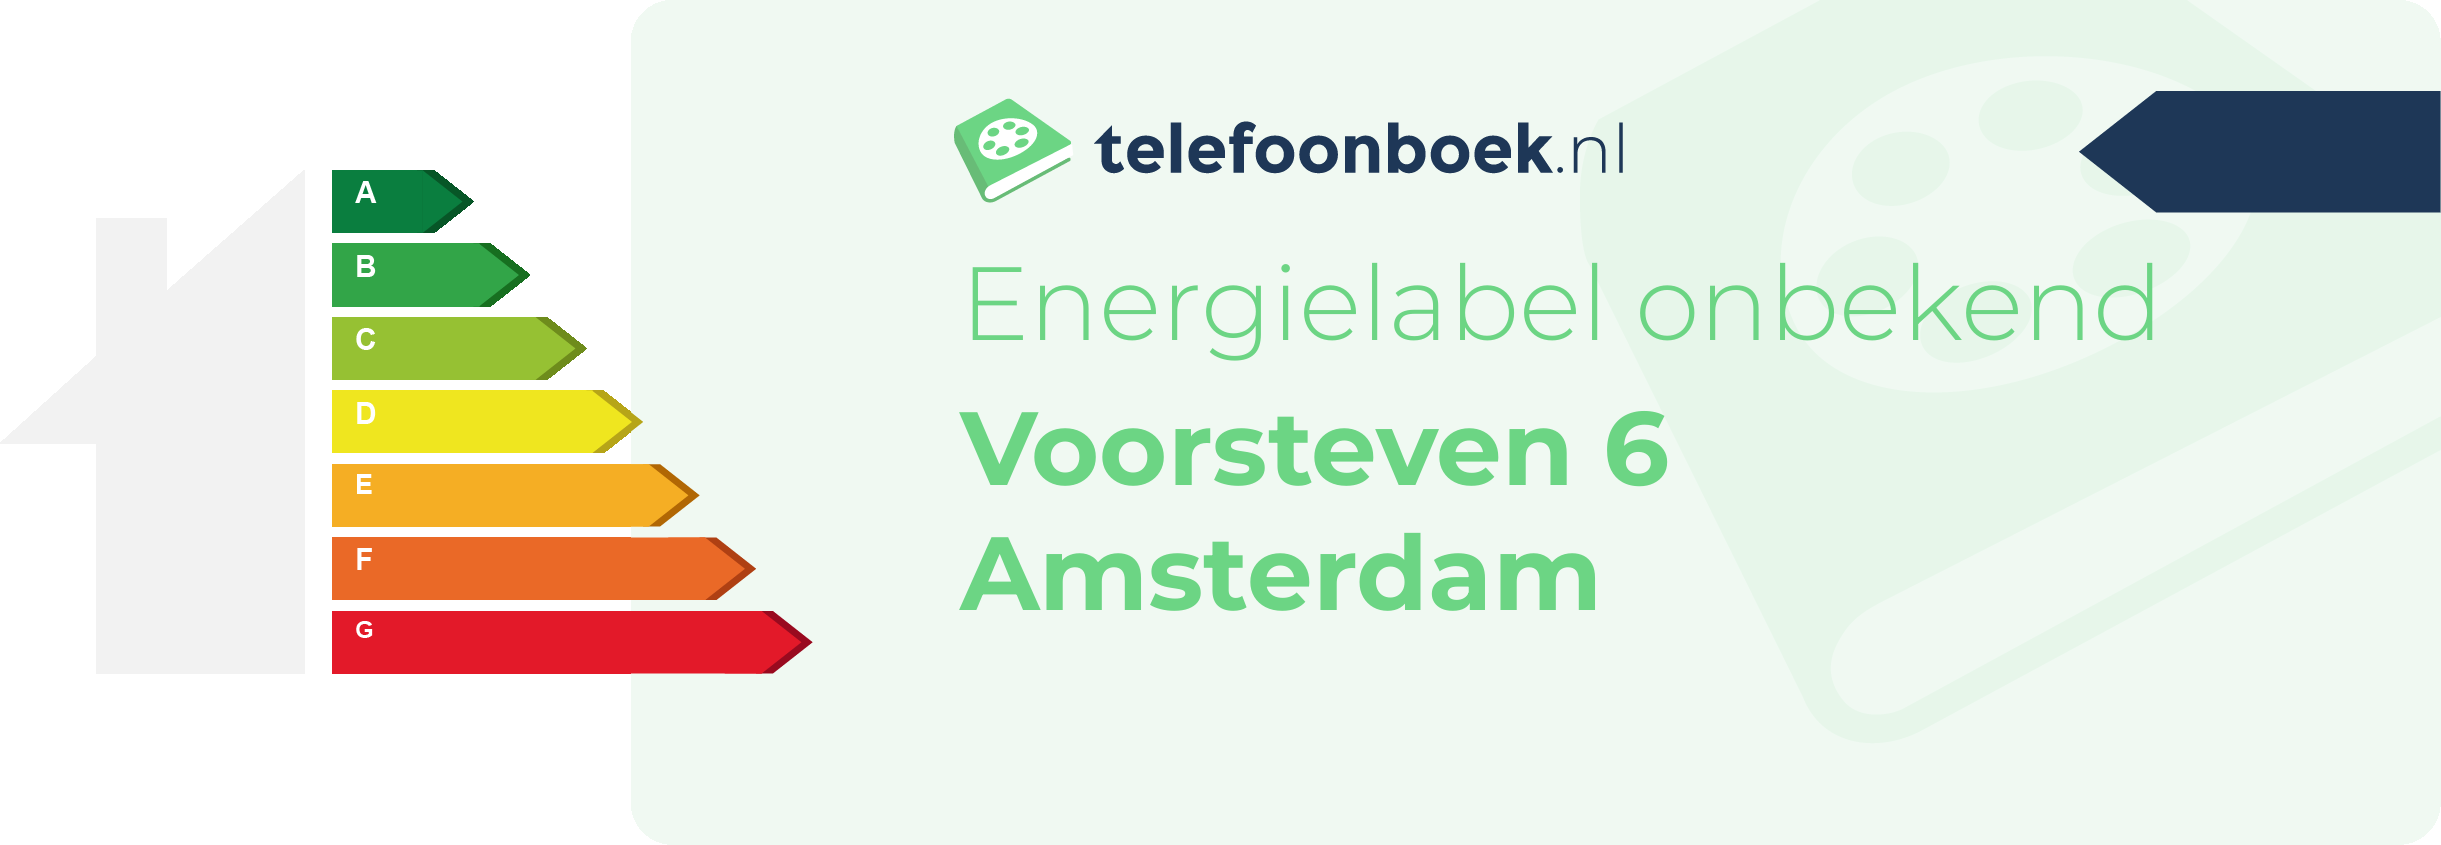 Energielabel Voorsteven 6 Amsterdam